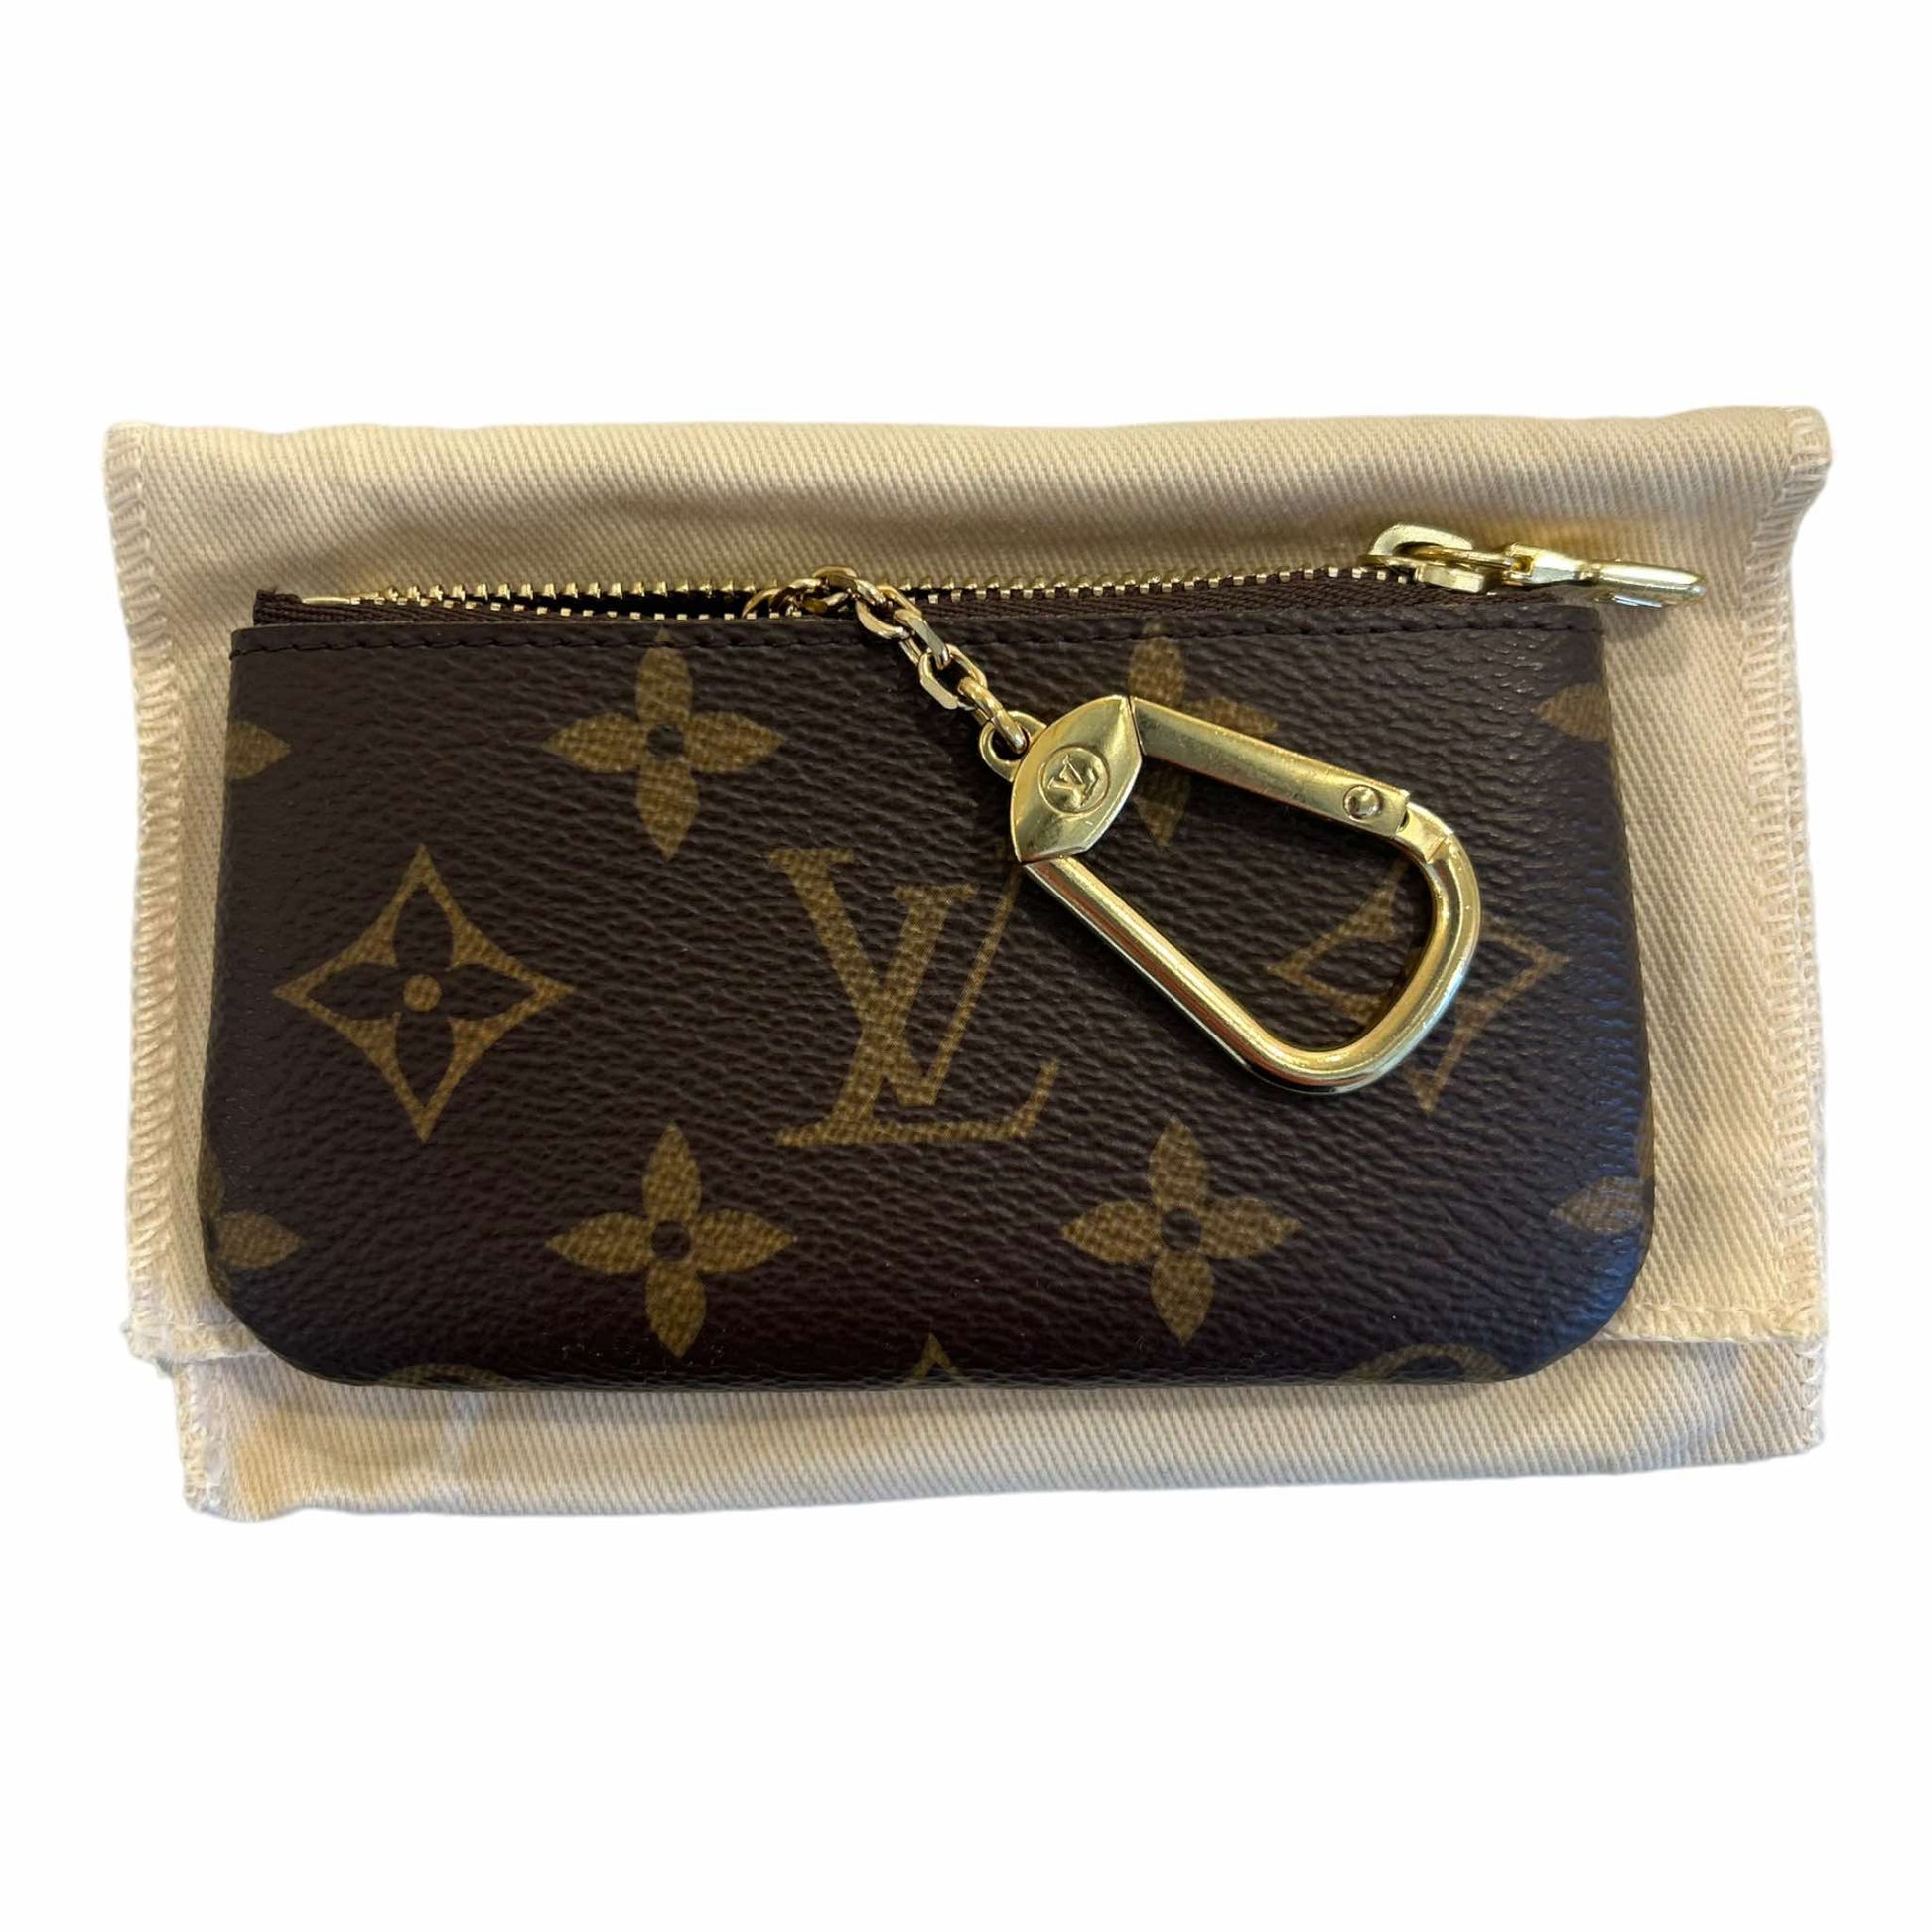 Buy Louis Vuitton Monogram Canvas Key Pouch M62650 at